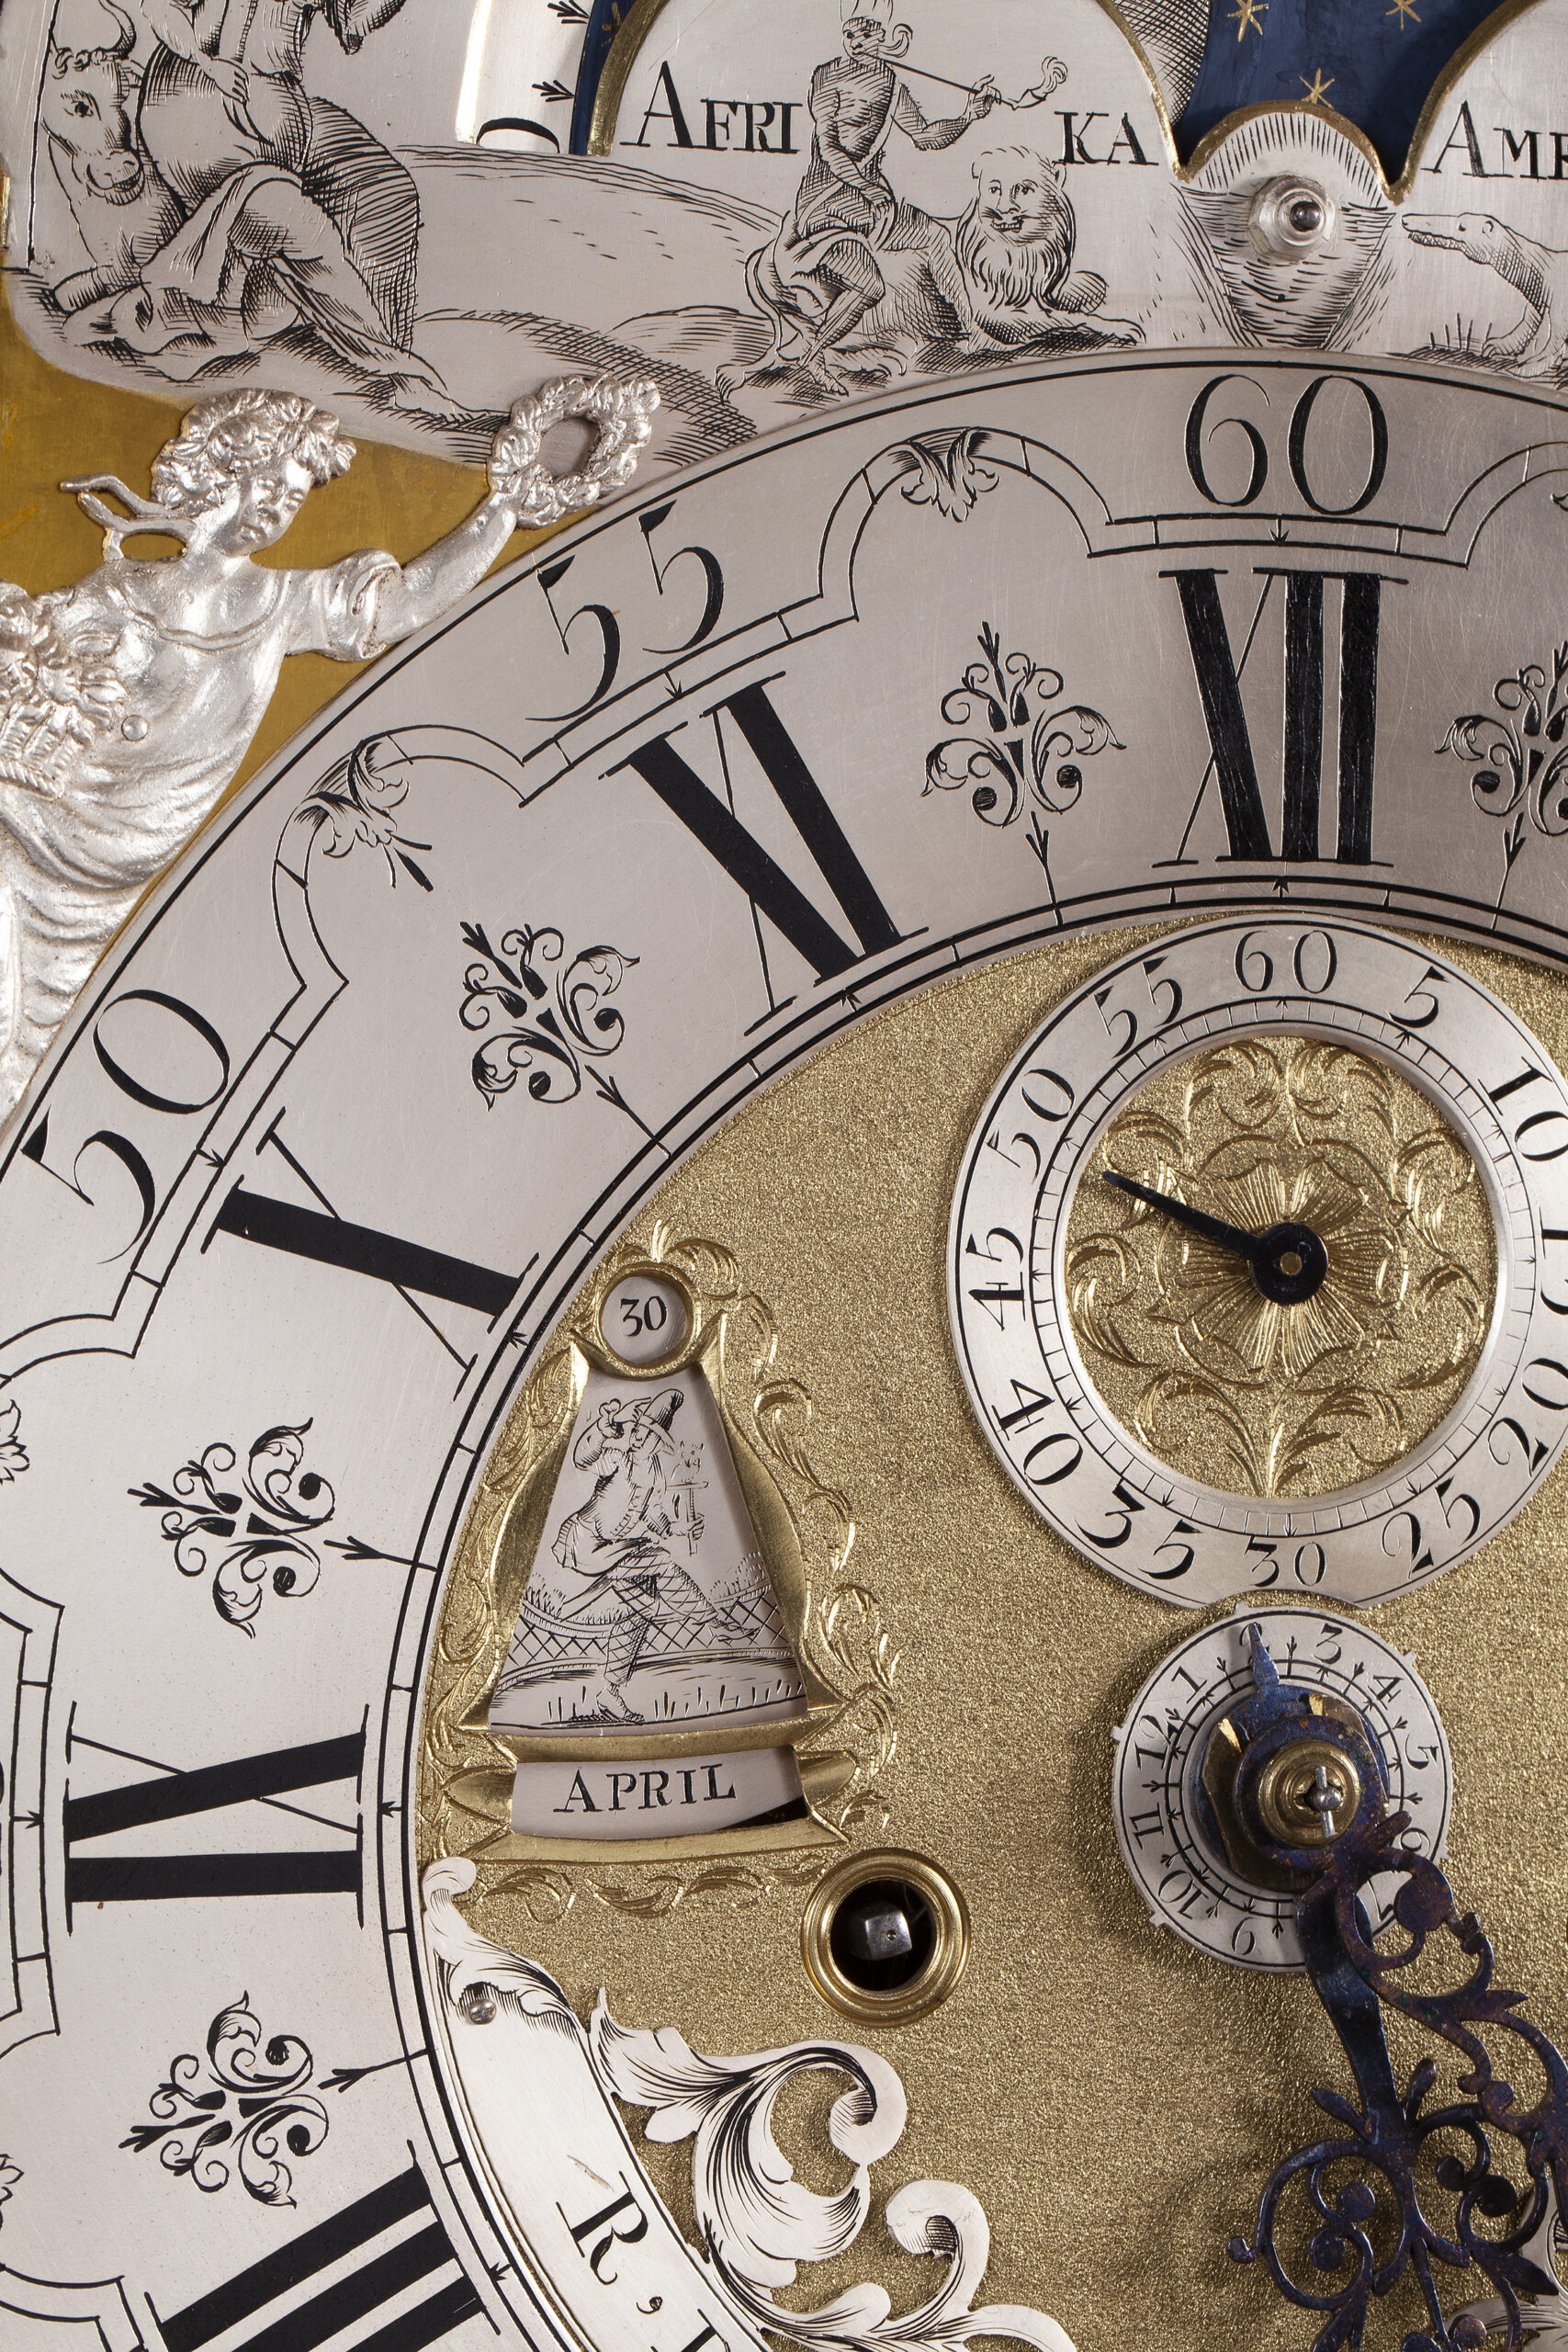 Ontmoedigen terrorisme Vul in Collectie antieke klokken, staande klok Dunster 18e eeuw